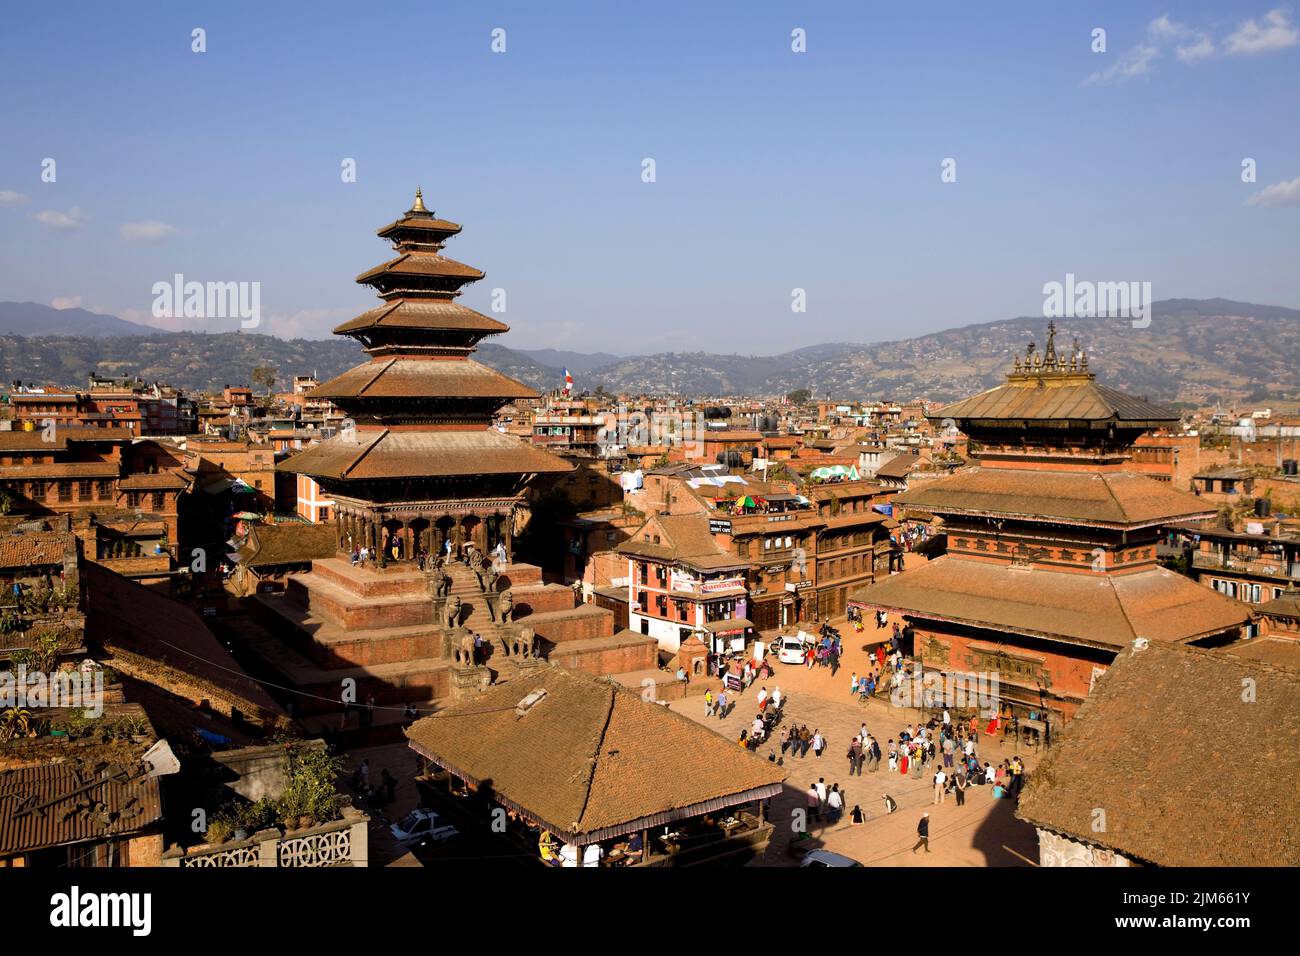 Bhaktapur, Nepal - 23 de octubre de 2012: Nyatapola Temple es una pagoda situada en la ciudad de Bhaktapur, Nepal. El templo es declarado Patrimonio de la Humanidad por la UNESCO. Foto de stock